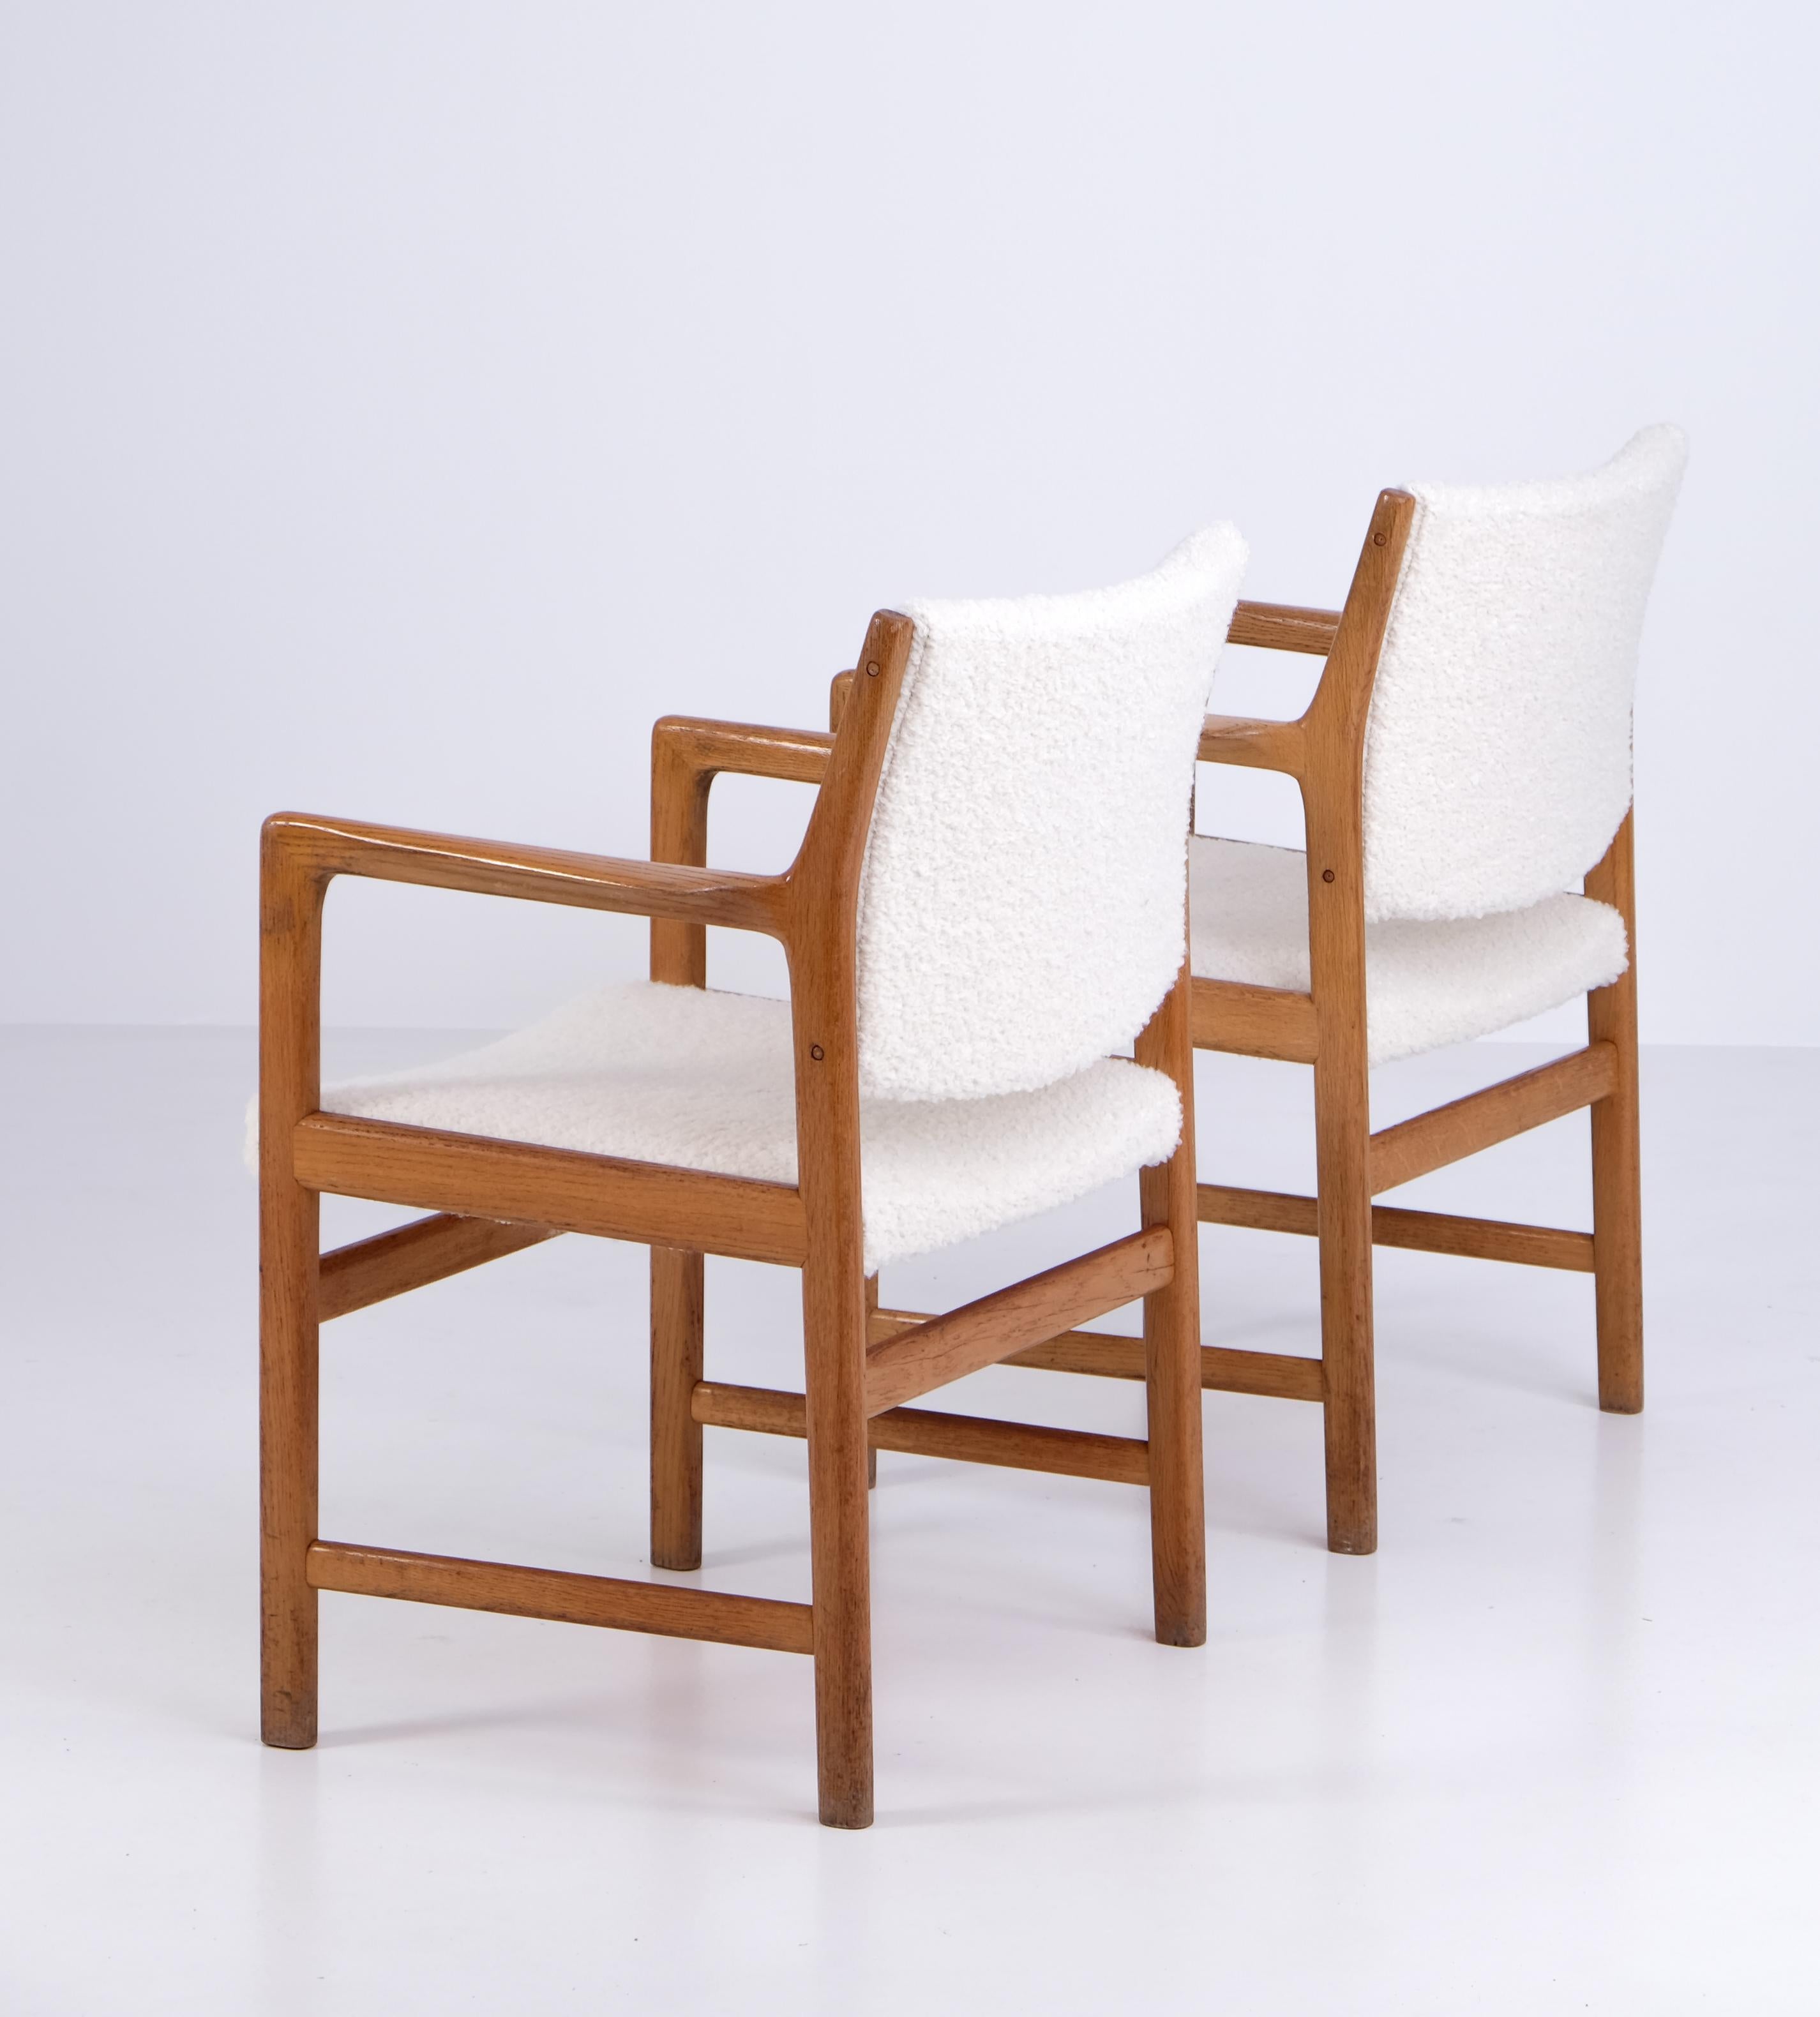 Fauteuils conçus par Karl-Erik Ekselius, produits par JOC à Vetlanda, Suède, années 1960.
Structure en chêne massif et coussins nouvellement rembourrés.
Jeu de 10 chaises disponible. Le prix indiqué est celui d'une paire.
 